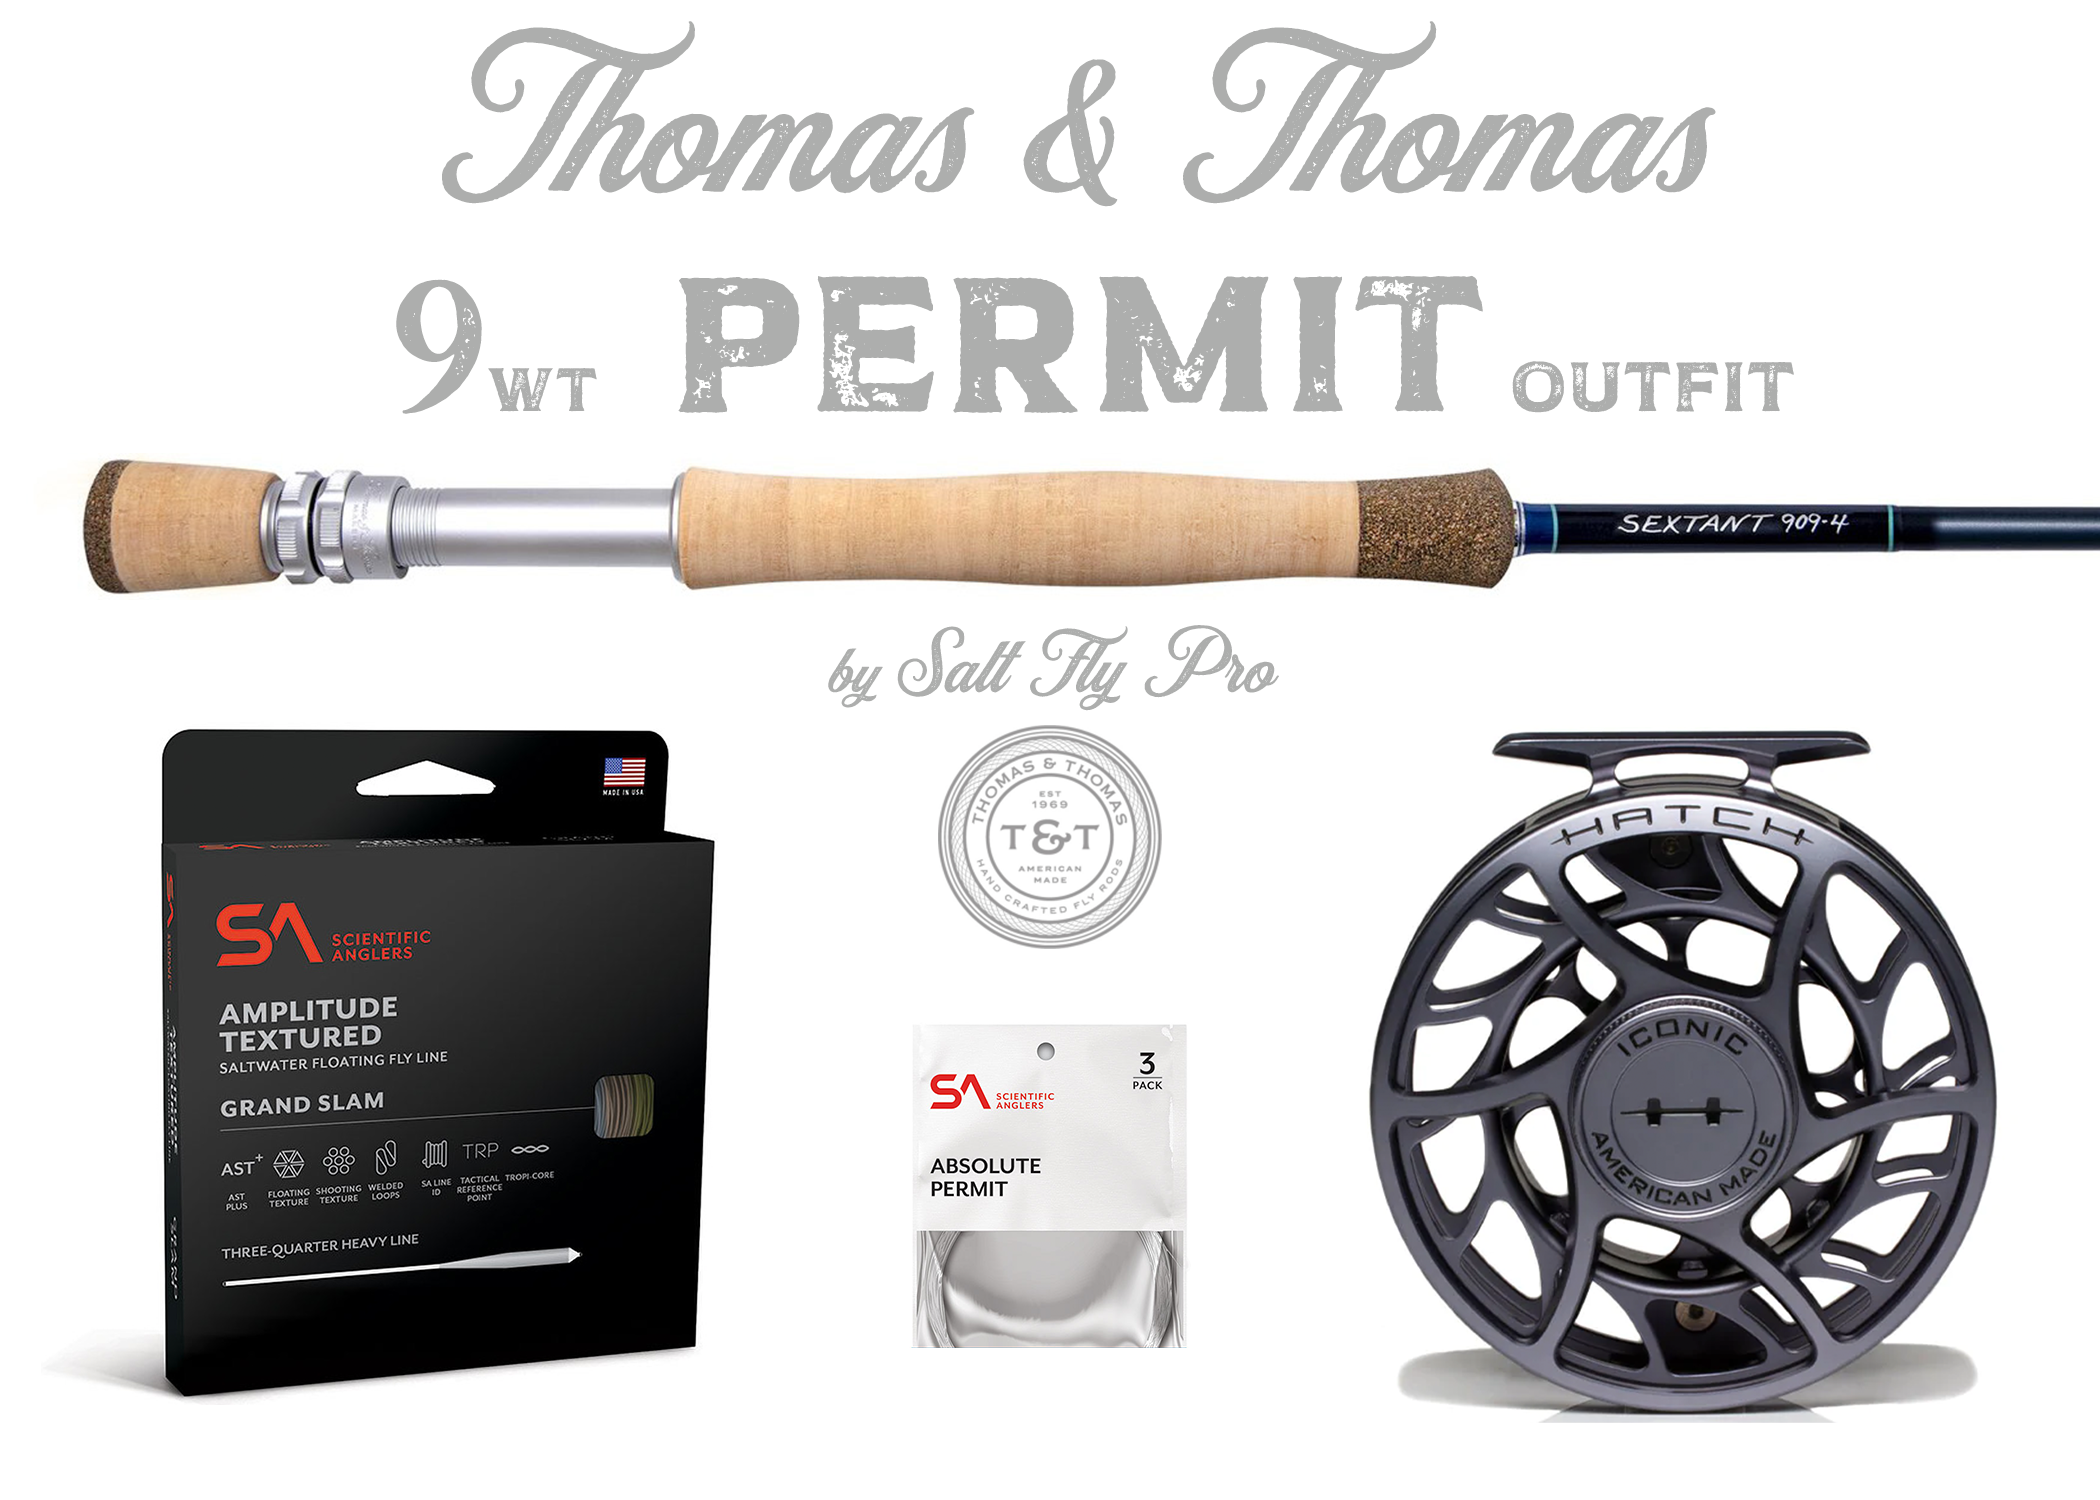 Thomas & Thomas Sextant 9wt PERMIT Outfit Combo - NEW!